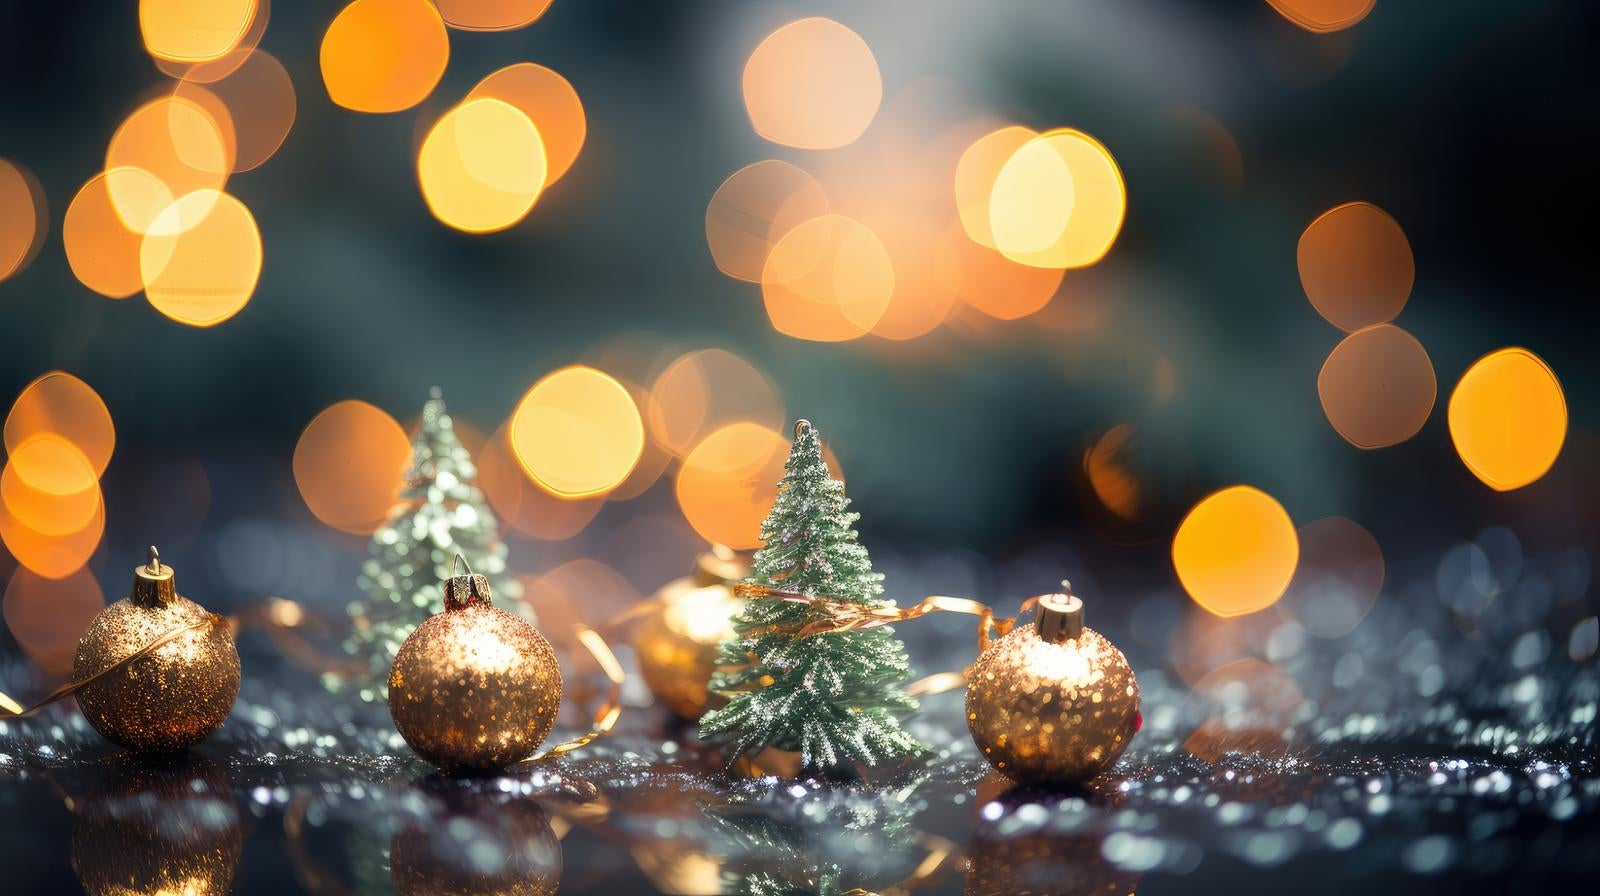 「光り輝くライトアップと小さなクリスマスツリーの小物」の写真